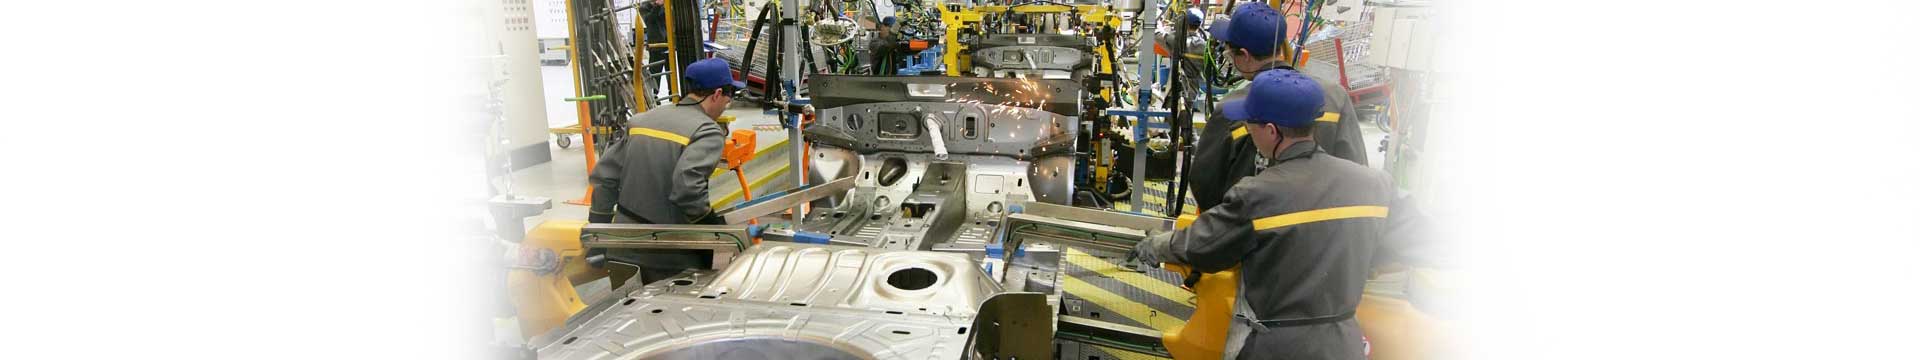 เจาะอนาคตอุตสาหกรรมไทย: อุตสาหกรรมรถยนต์